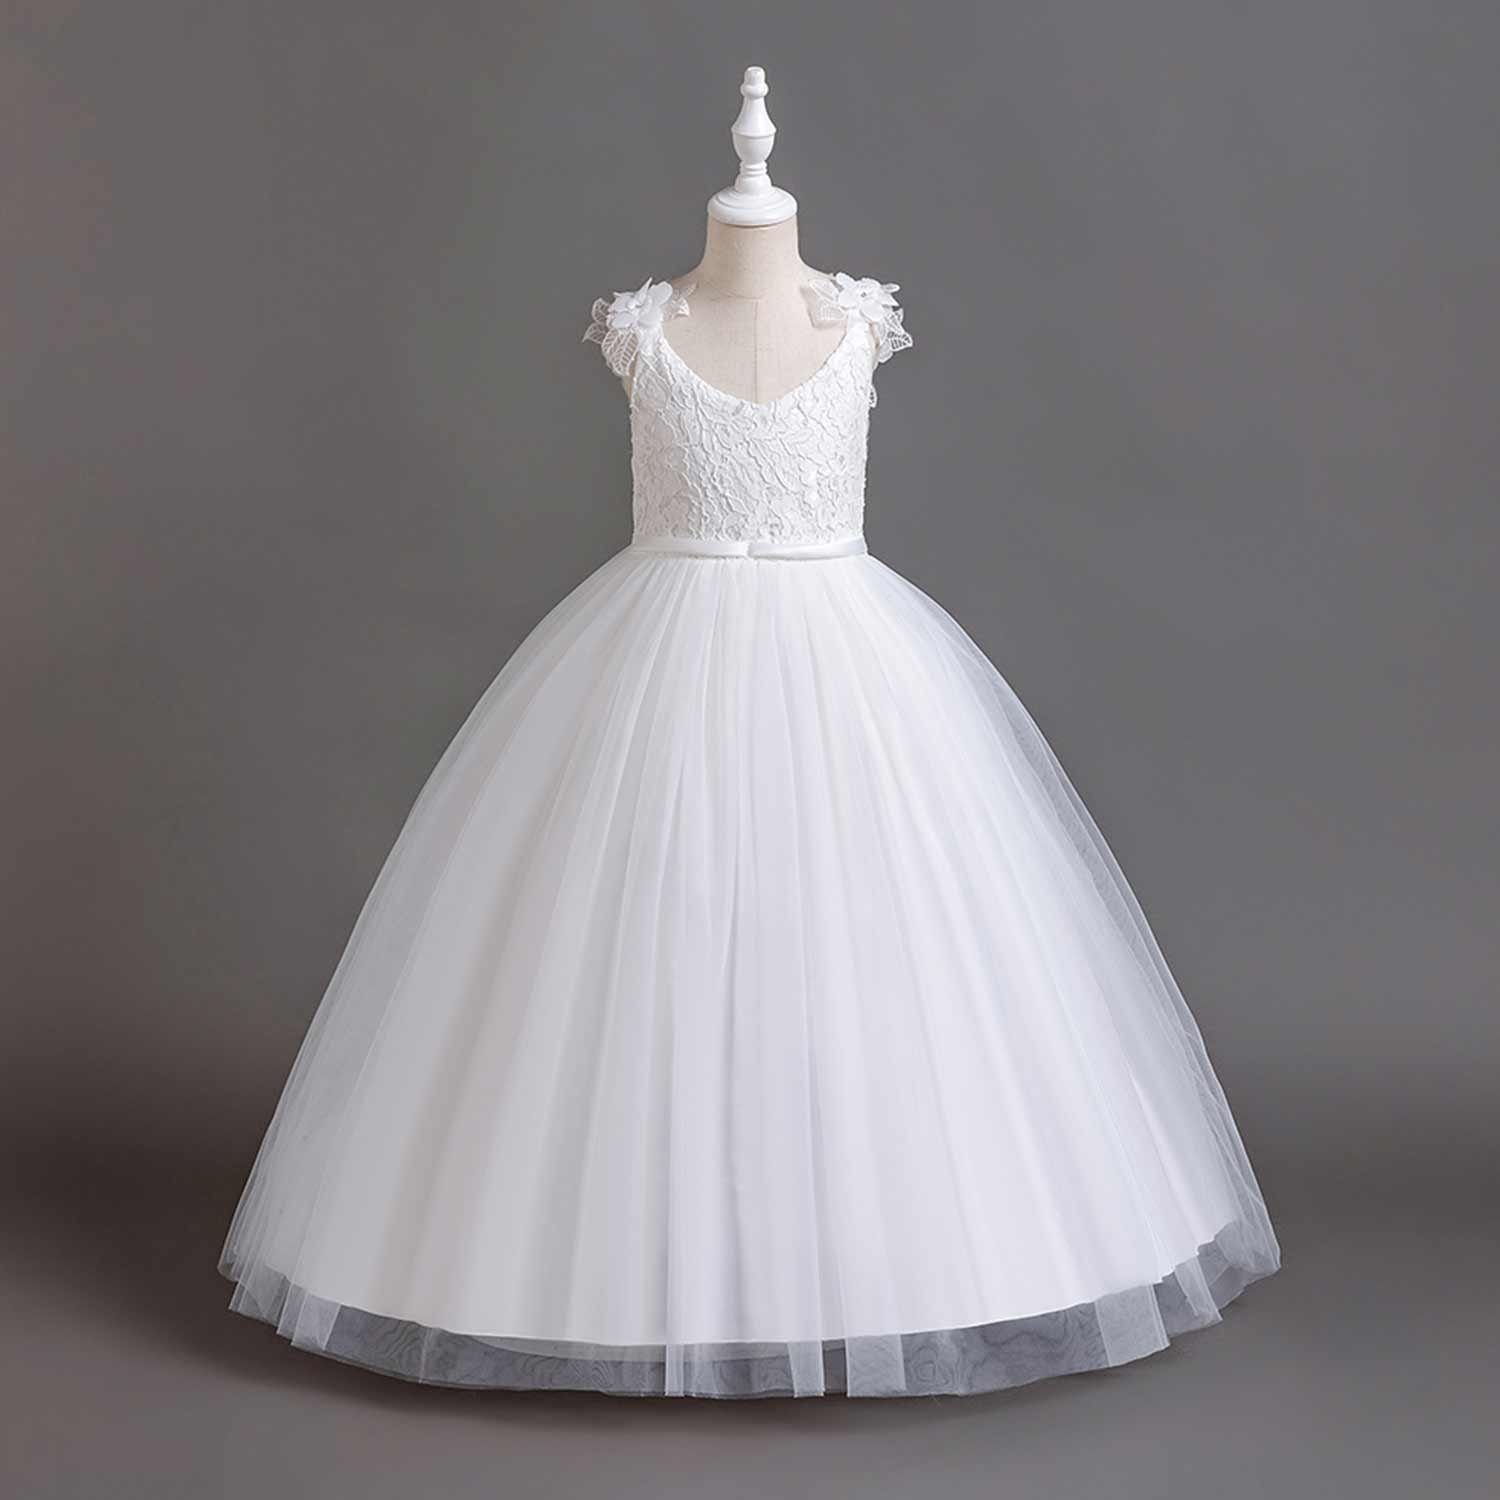 Abendkleid Daisred Blumenmädchen Tüllkleider Abendkleider Weiß Prinzessinnenkleider